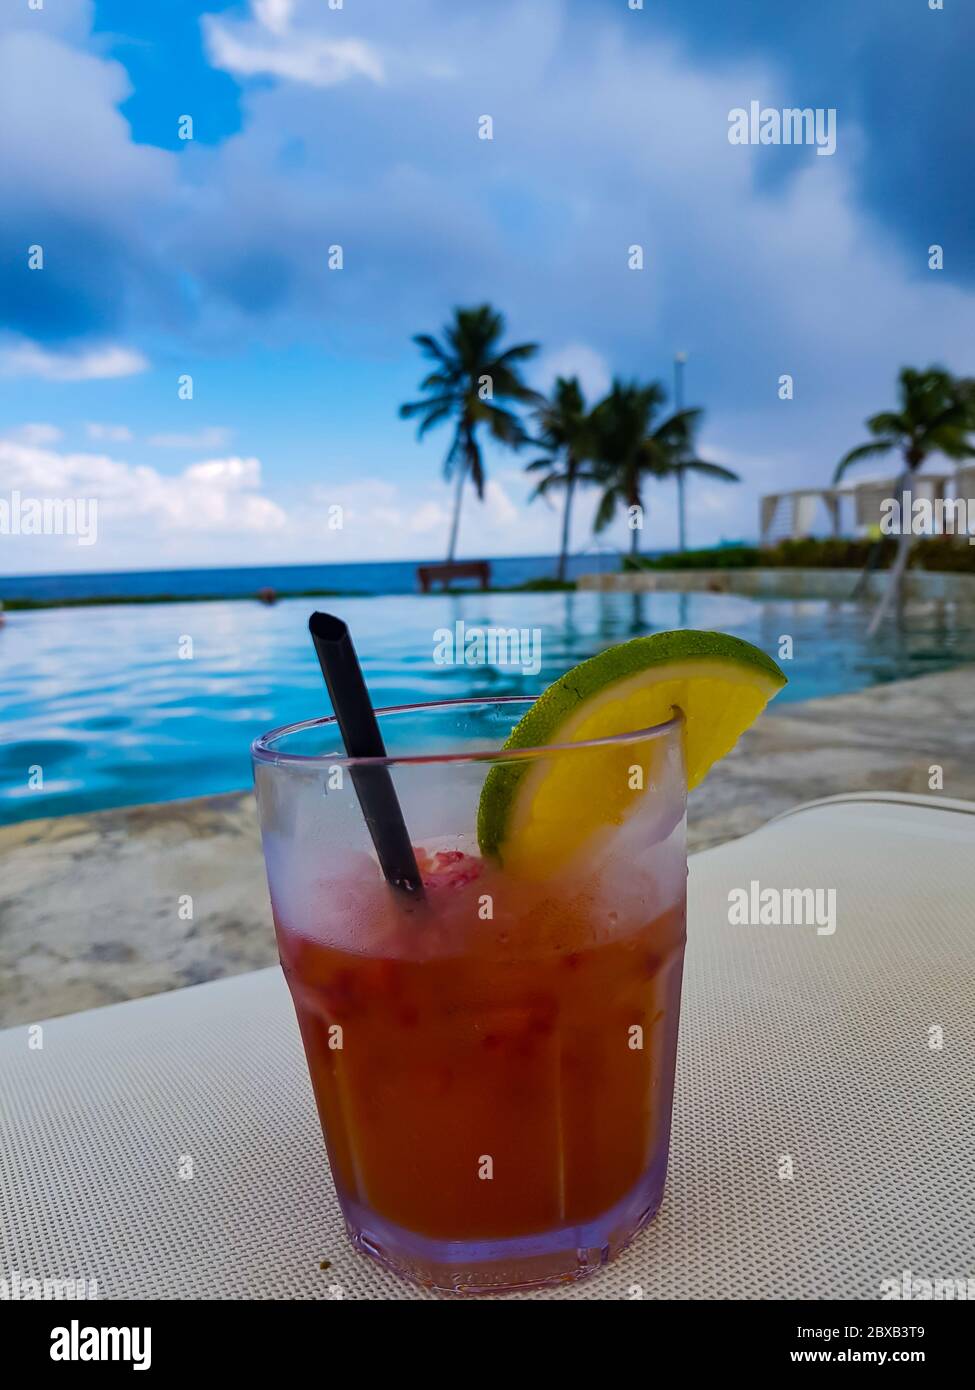 Passionsfrucht-Alkoholiker-Cocktail mit Limette und Palmen im Hintergrund in den TRS Hotels, Grand Palladium Resort, Cancun, Mexiko. Stockfoto